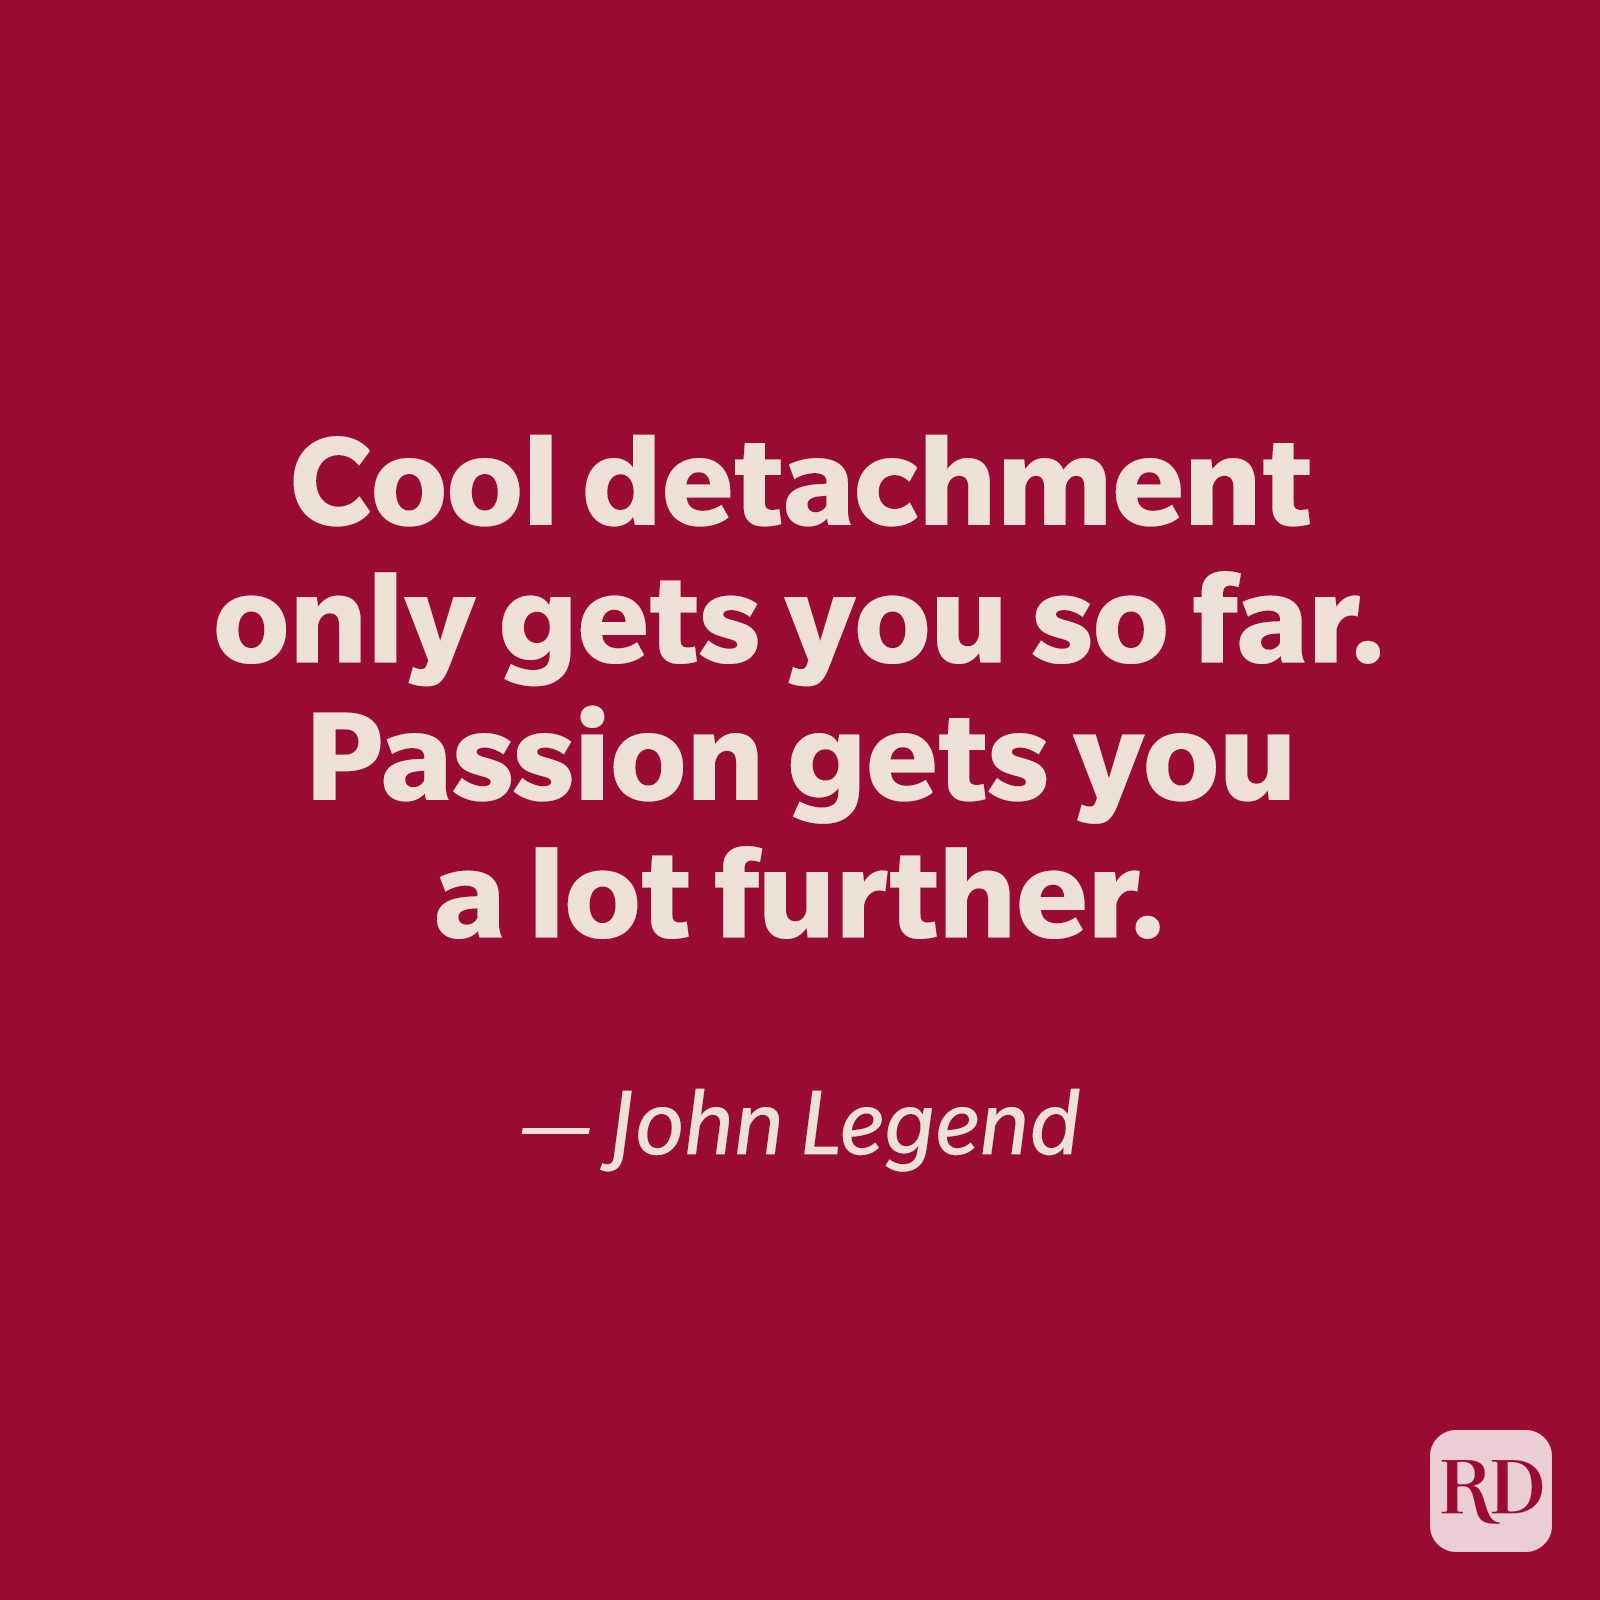 John Legend quote